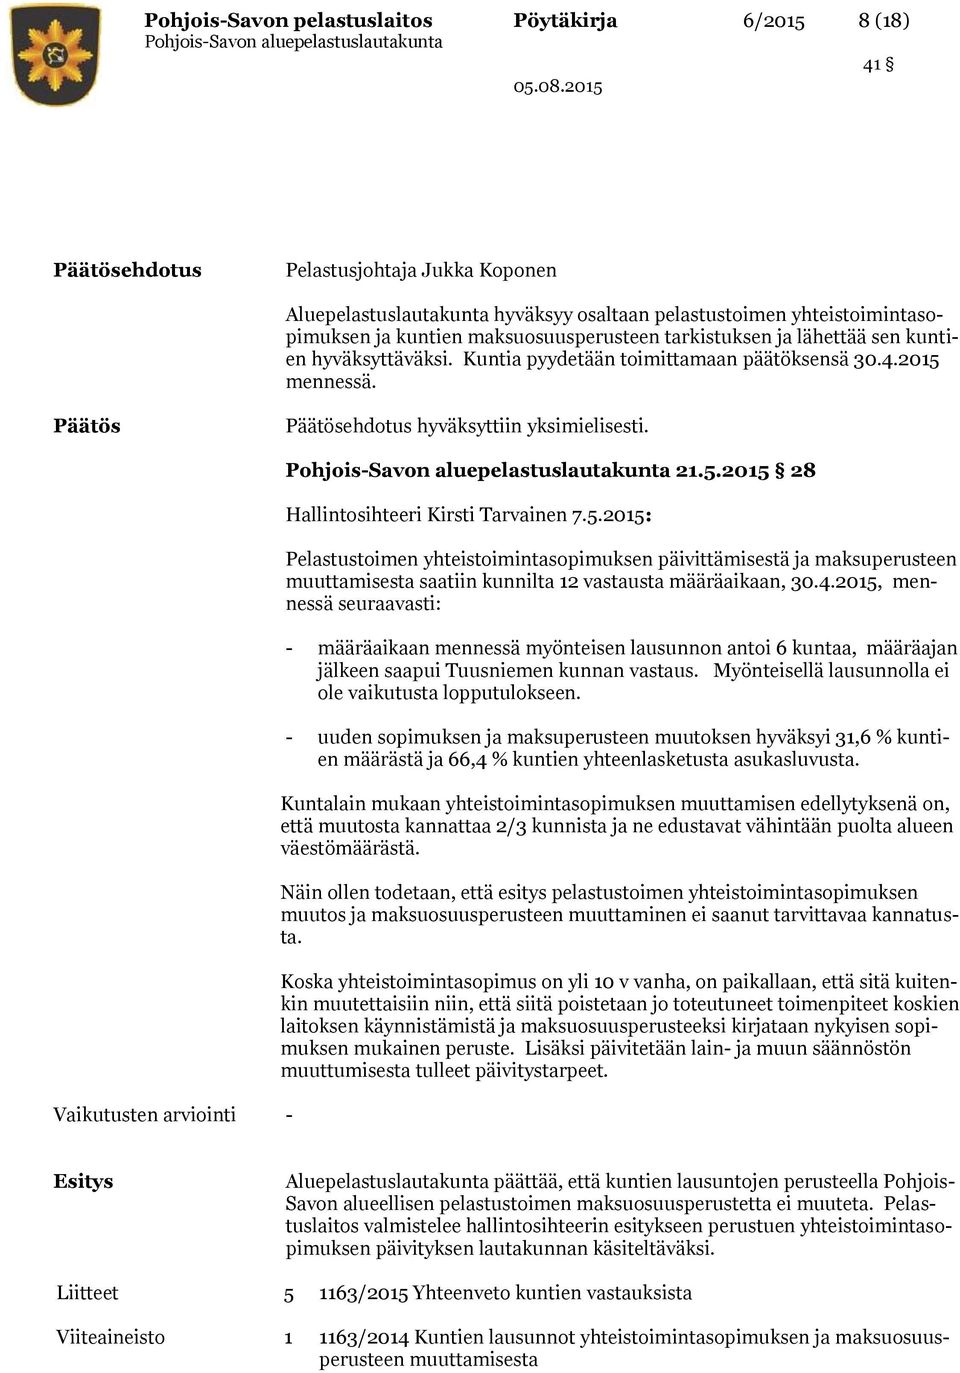 mennessä. ehdotus hyväksyttiin yksimielisesti. 21.5.2015 28 Hallintosihteeri Kirsti Tarvainen 7.5.2015: Pelastustoimen yhteistoimintasopimuksen päivittämisestä ja maksuperusteen muuttamisesta saatiin kunnilta 12 vastausta määräaikaan, 30.